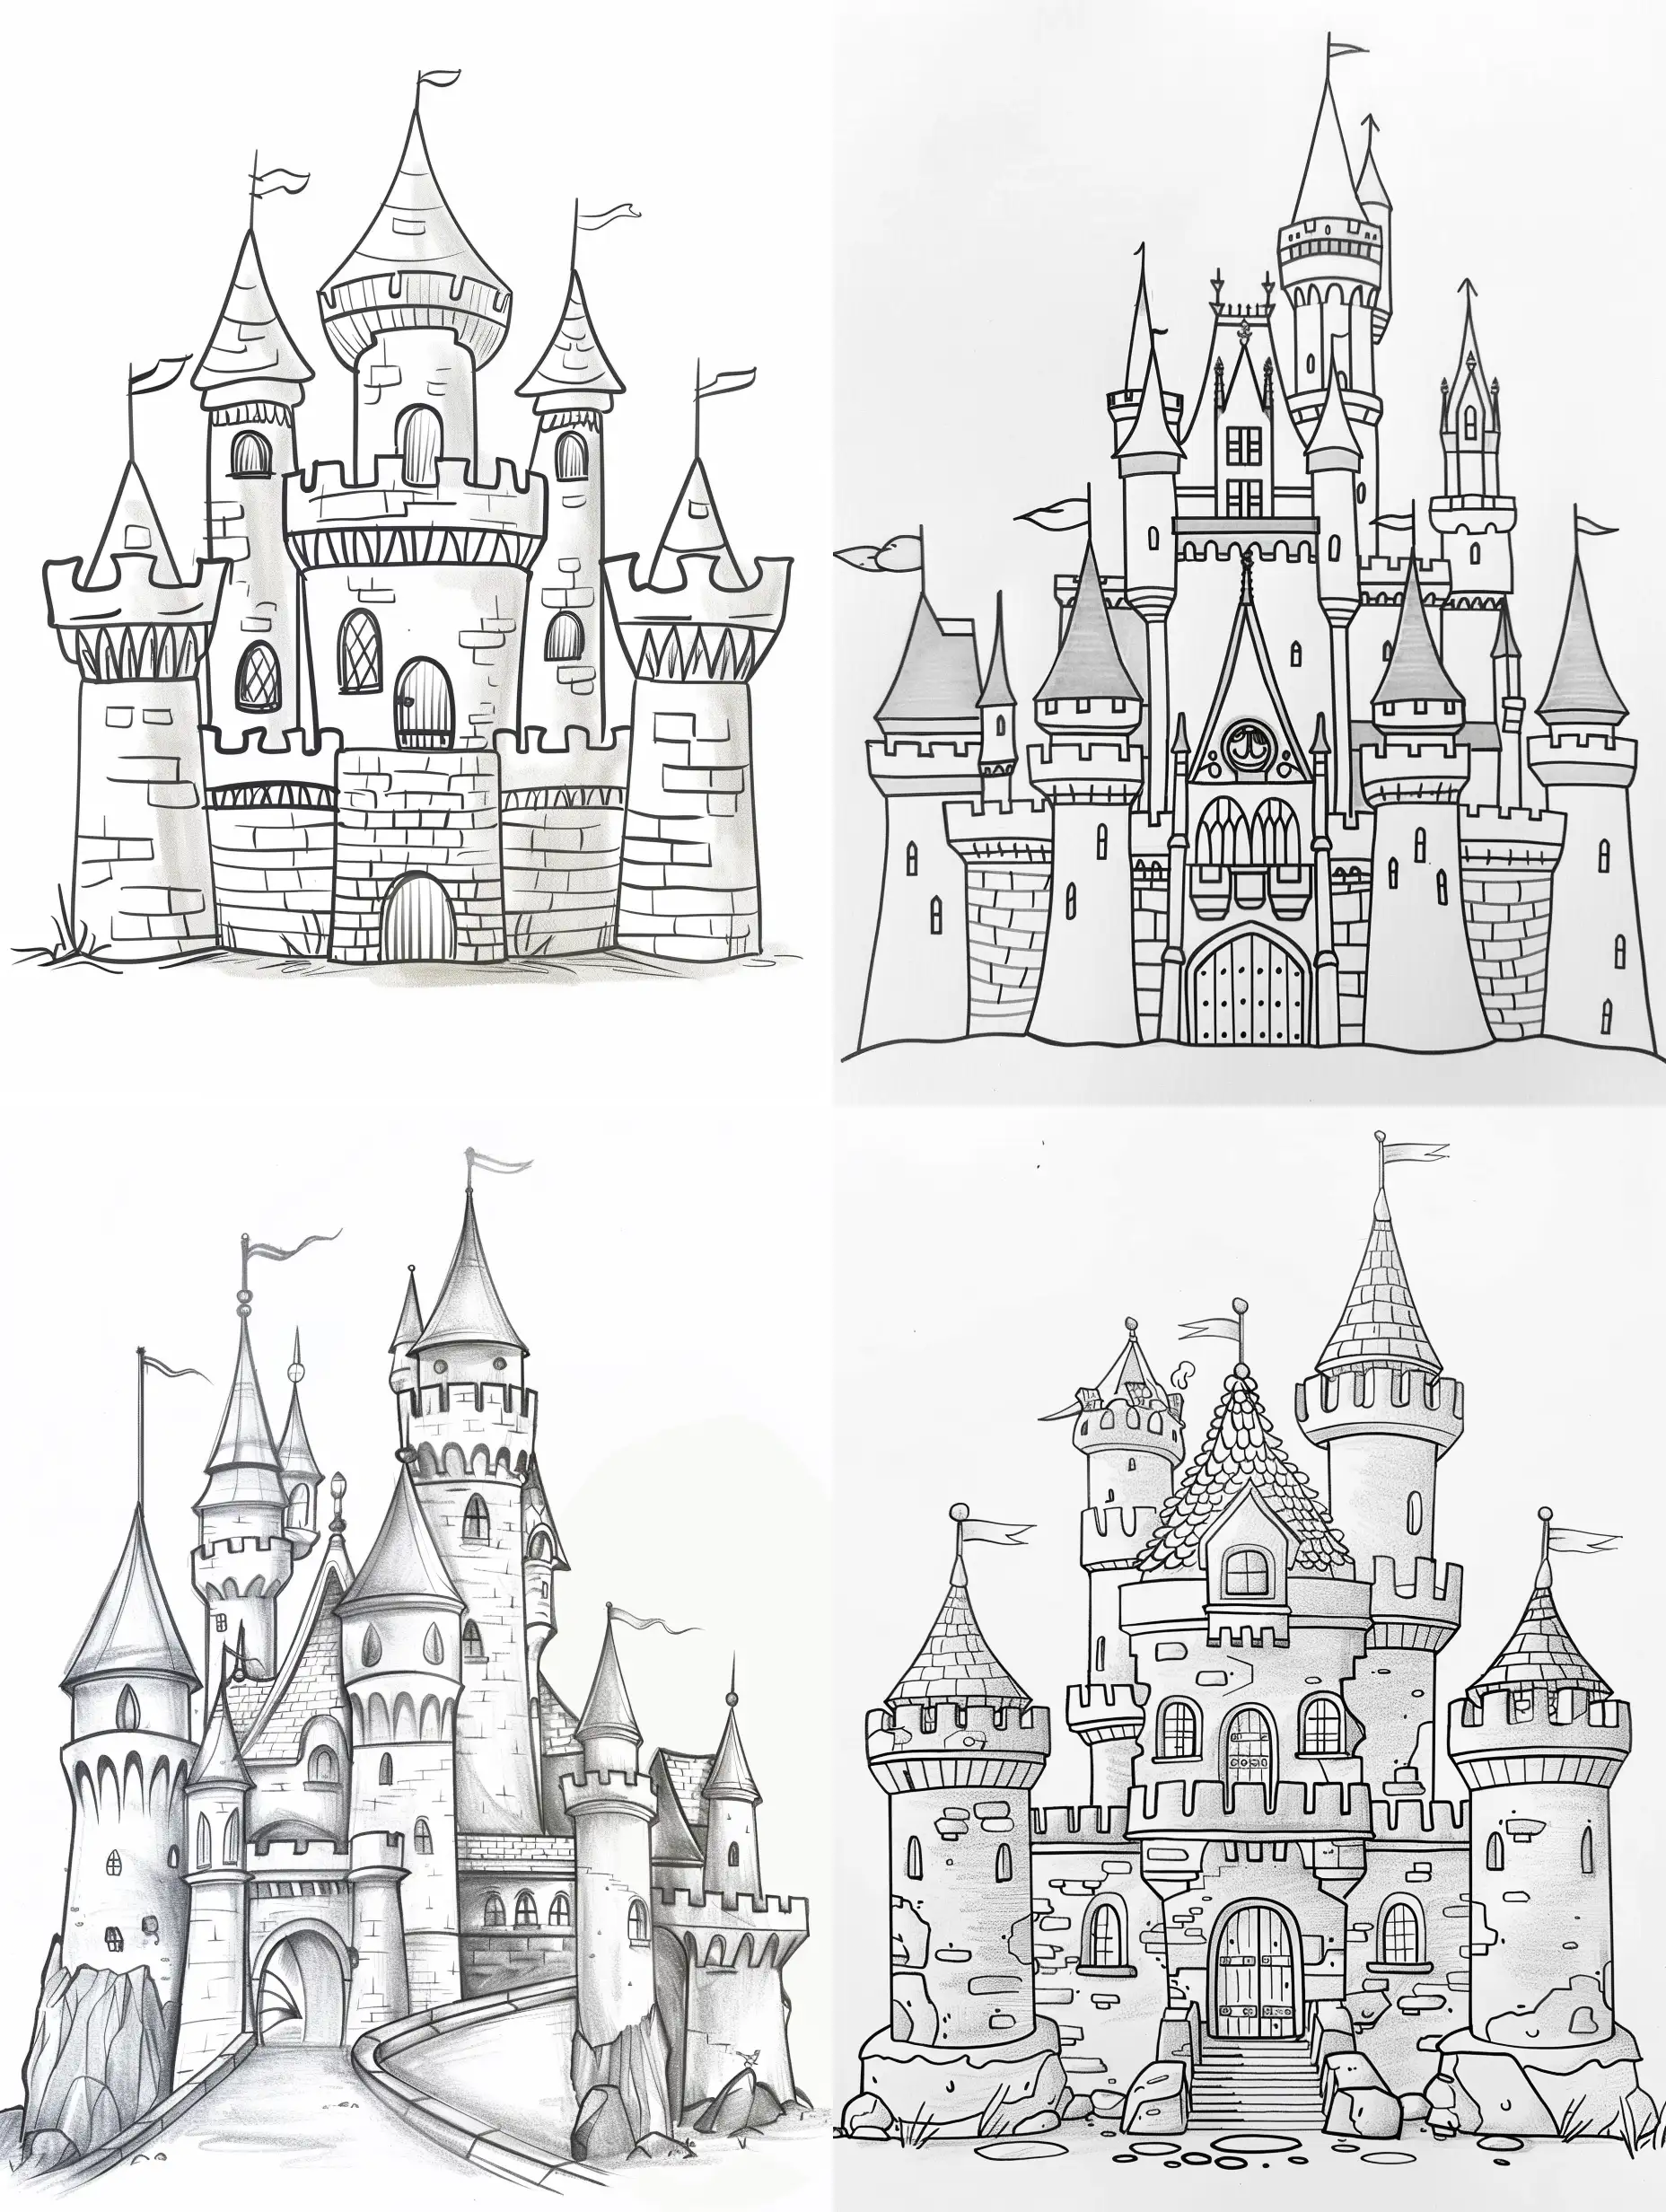  Dibuja  un castillo, que sea lindo y sencillo para libro de colorear de niños pequeños, sin escalas de grises en una hoja blanca con fondo liso sin dibujos .
Que sus rasgos sean dulces y agradables.